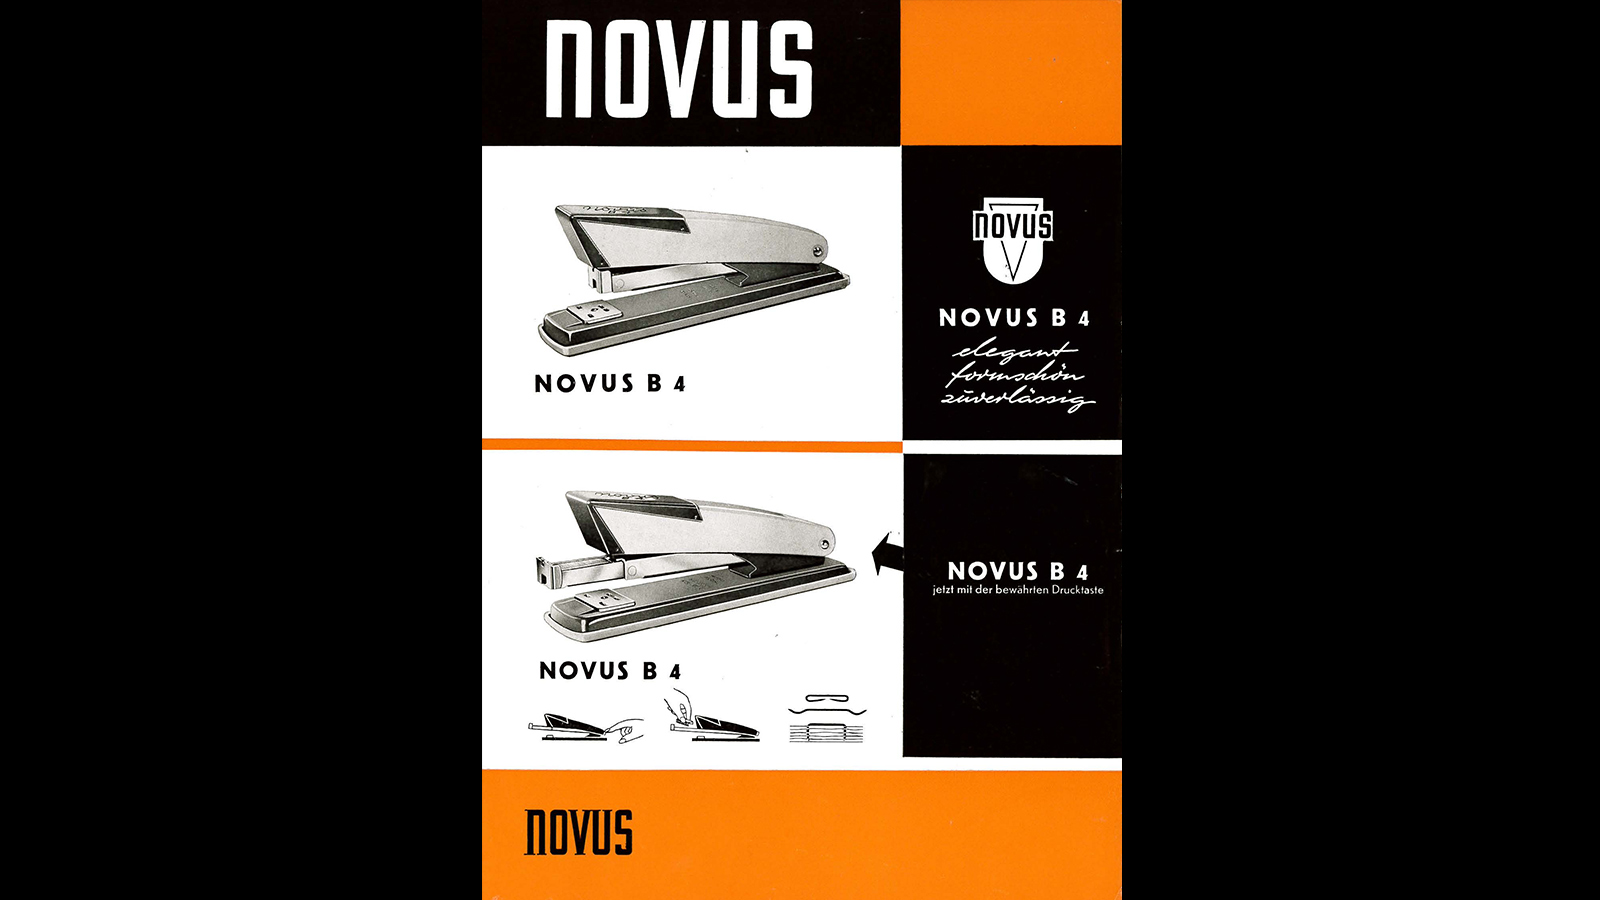 75 ans des agrafeuses Novus